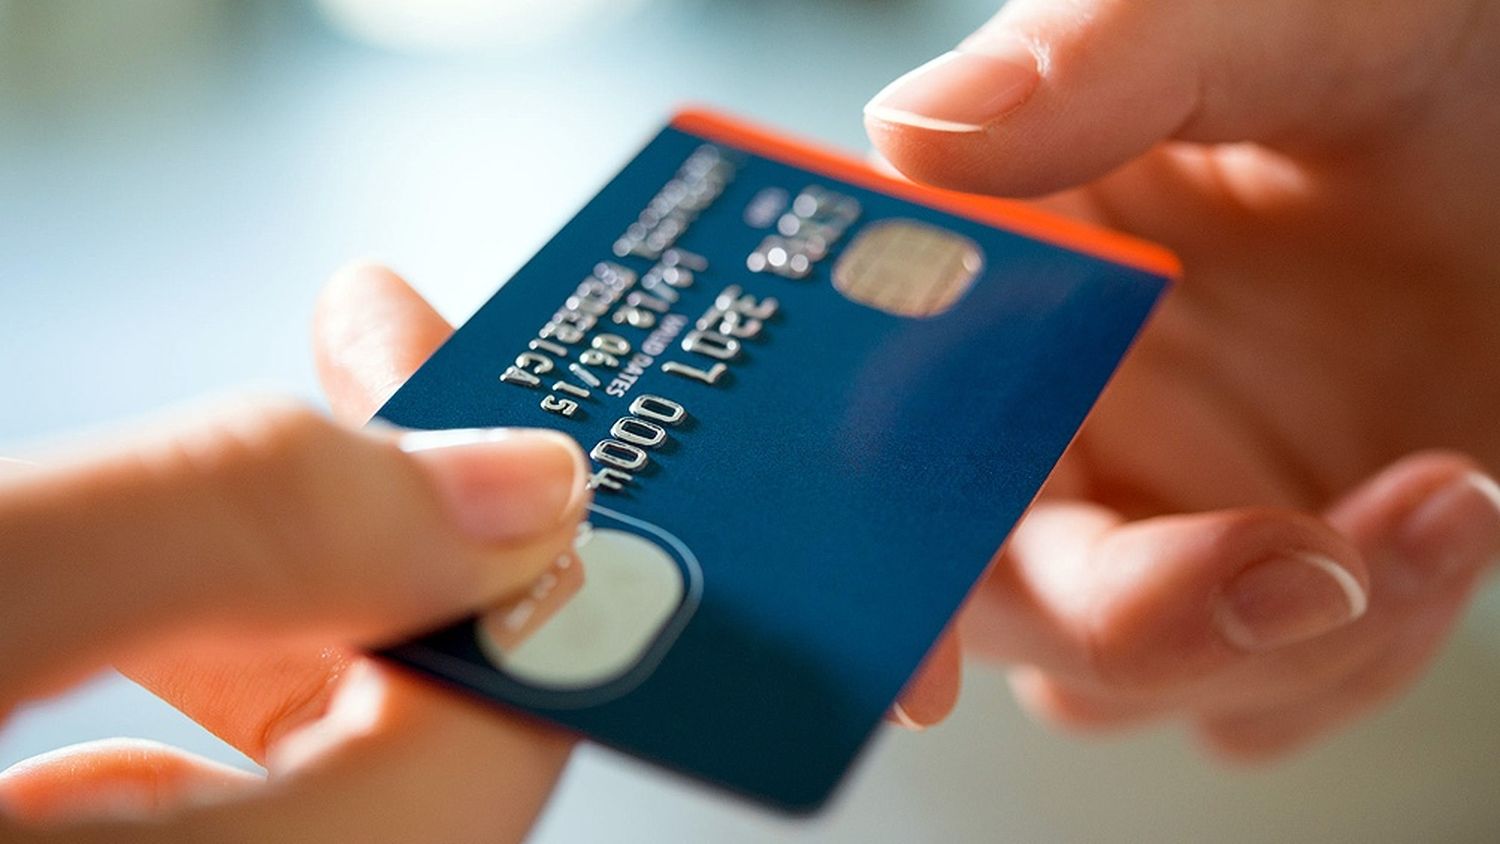 Las operaciones con tarjetas de crédito en dólares crecieron en noviembre